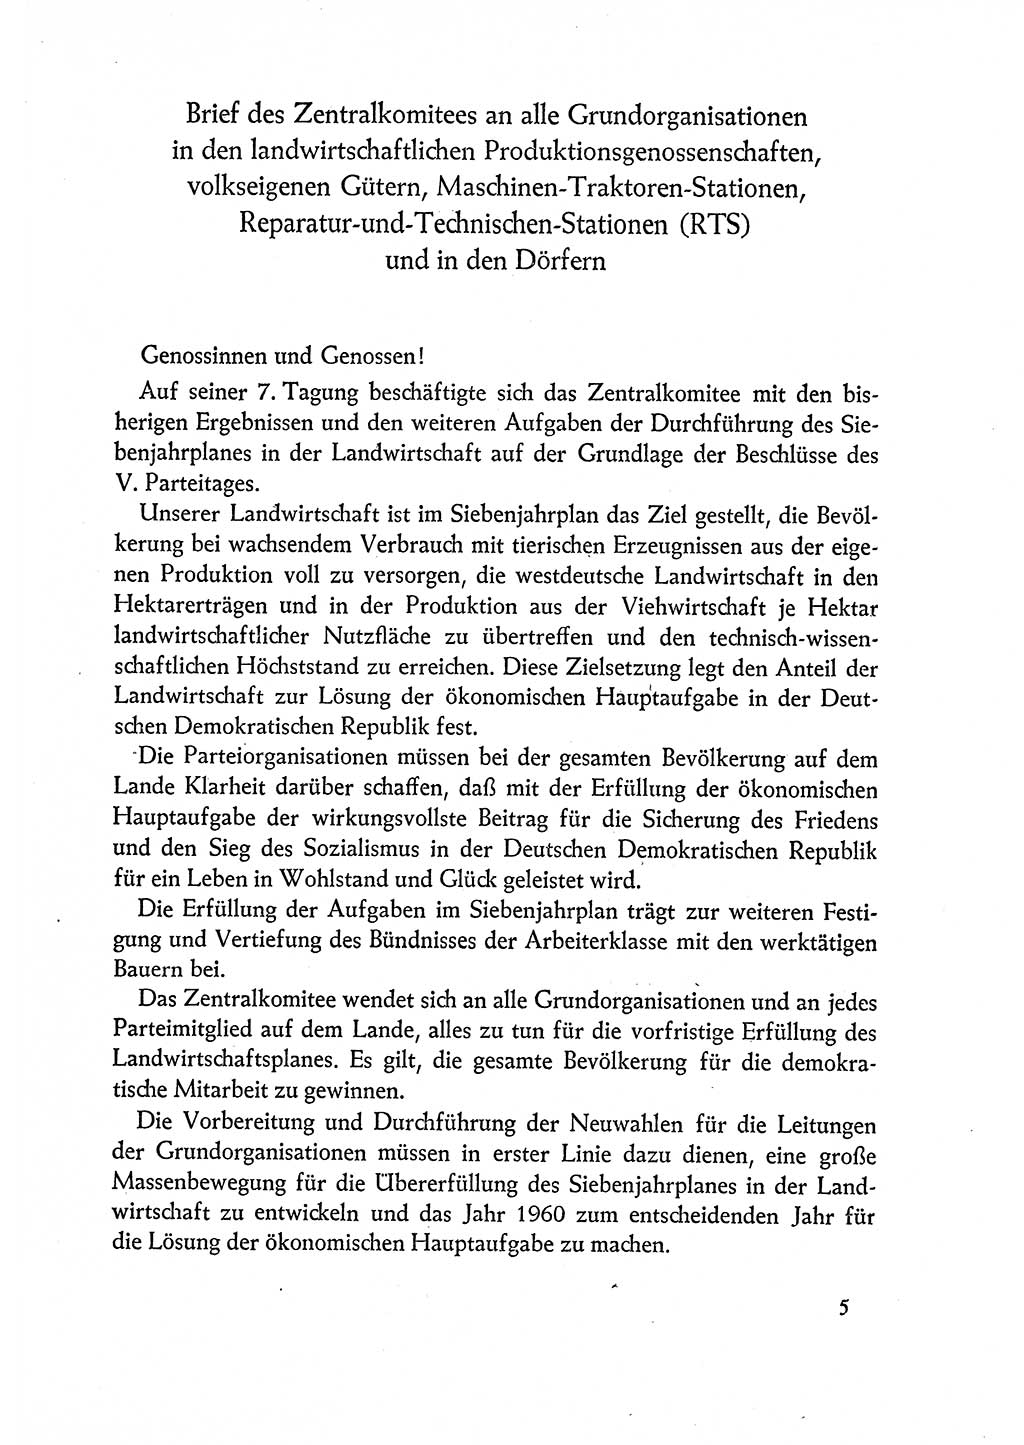 Dokumente der Sozialistischen Einheitspartei Deutschlands (SED) [Deutsche Demokratische Republik (DDR)] 1960-1961, Seite 5 (Dok. SED DDR 1960-1961, S. 5)